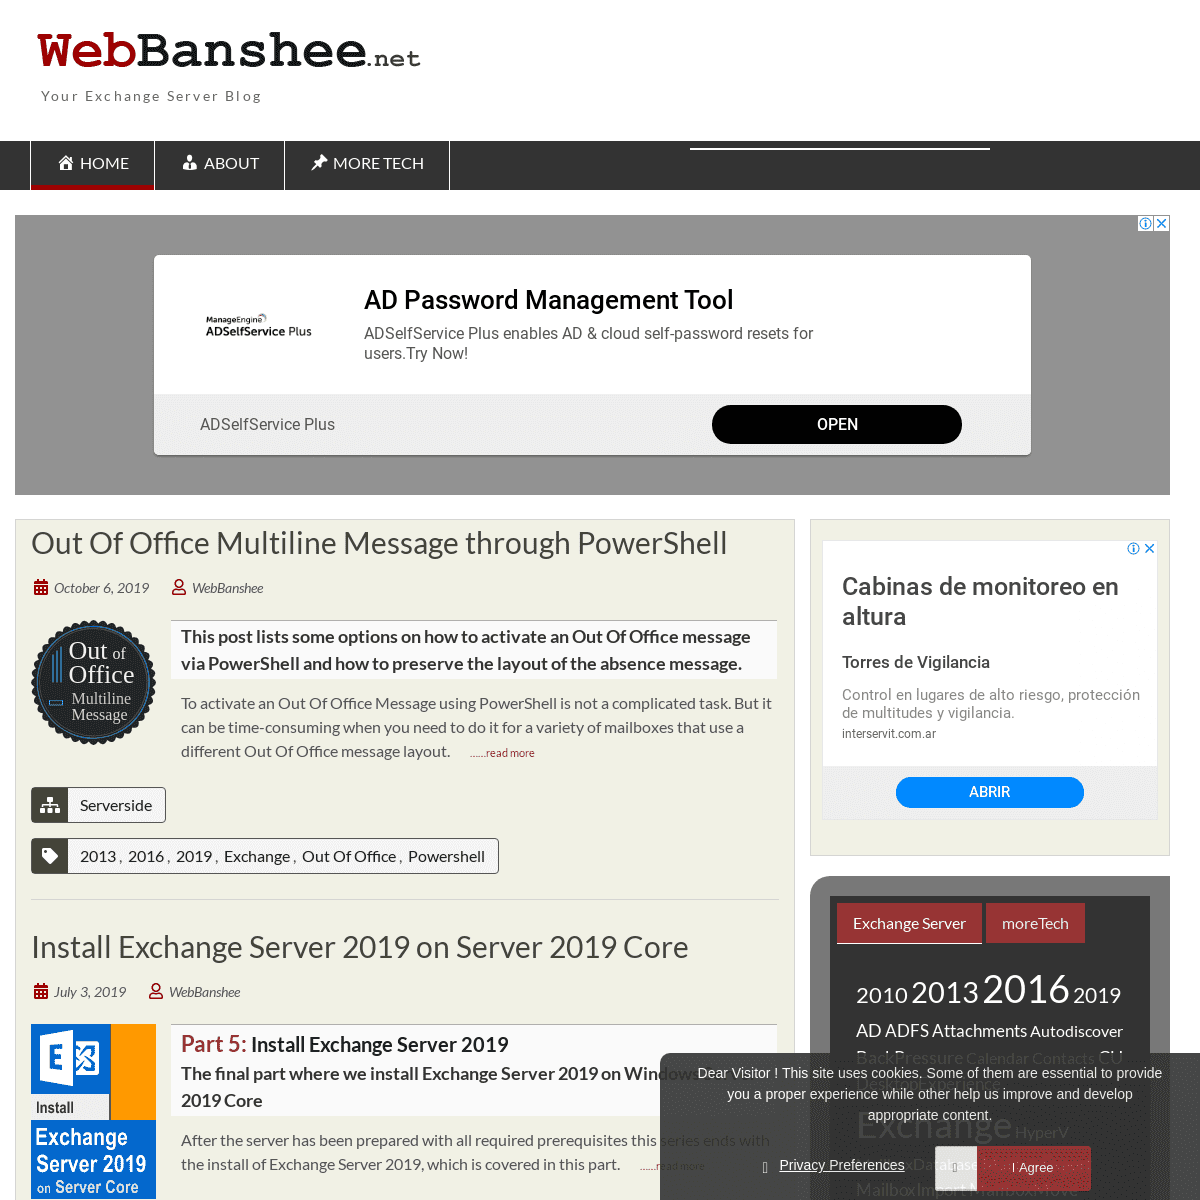 A complete backup of webbanshee.net